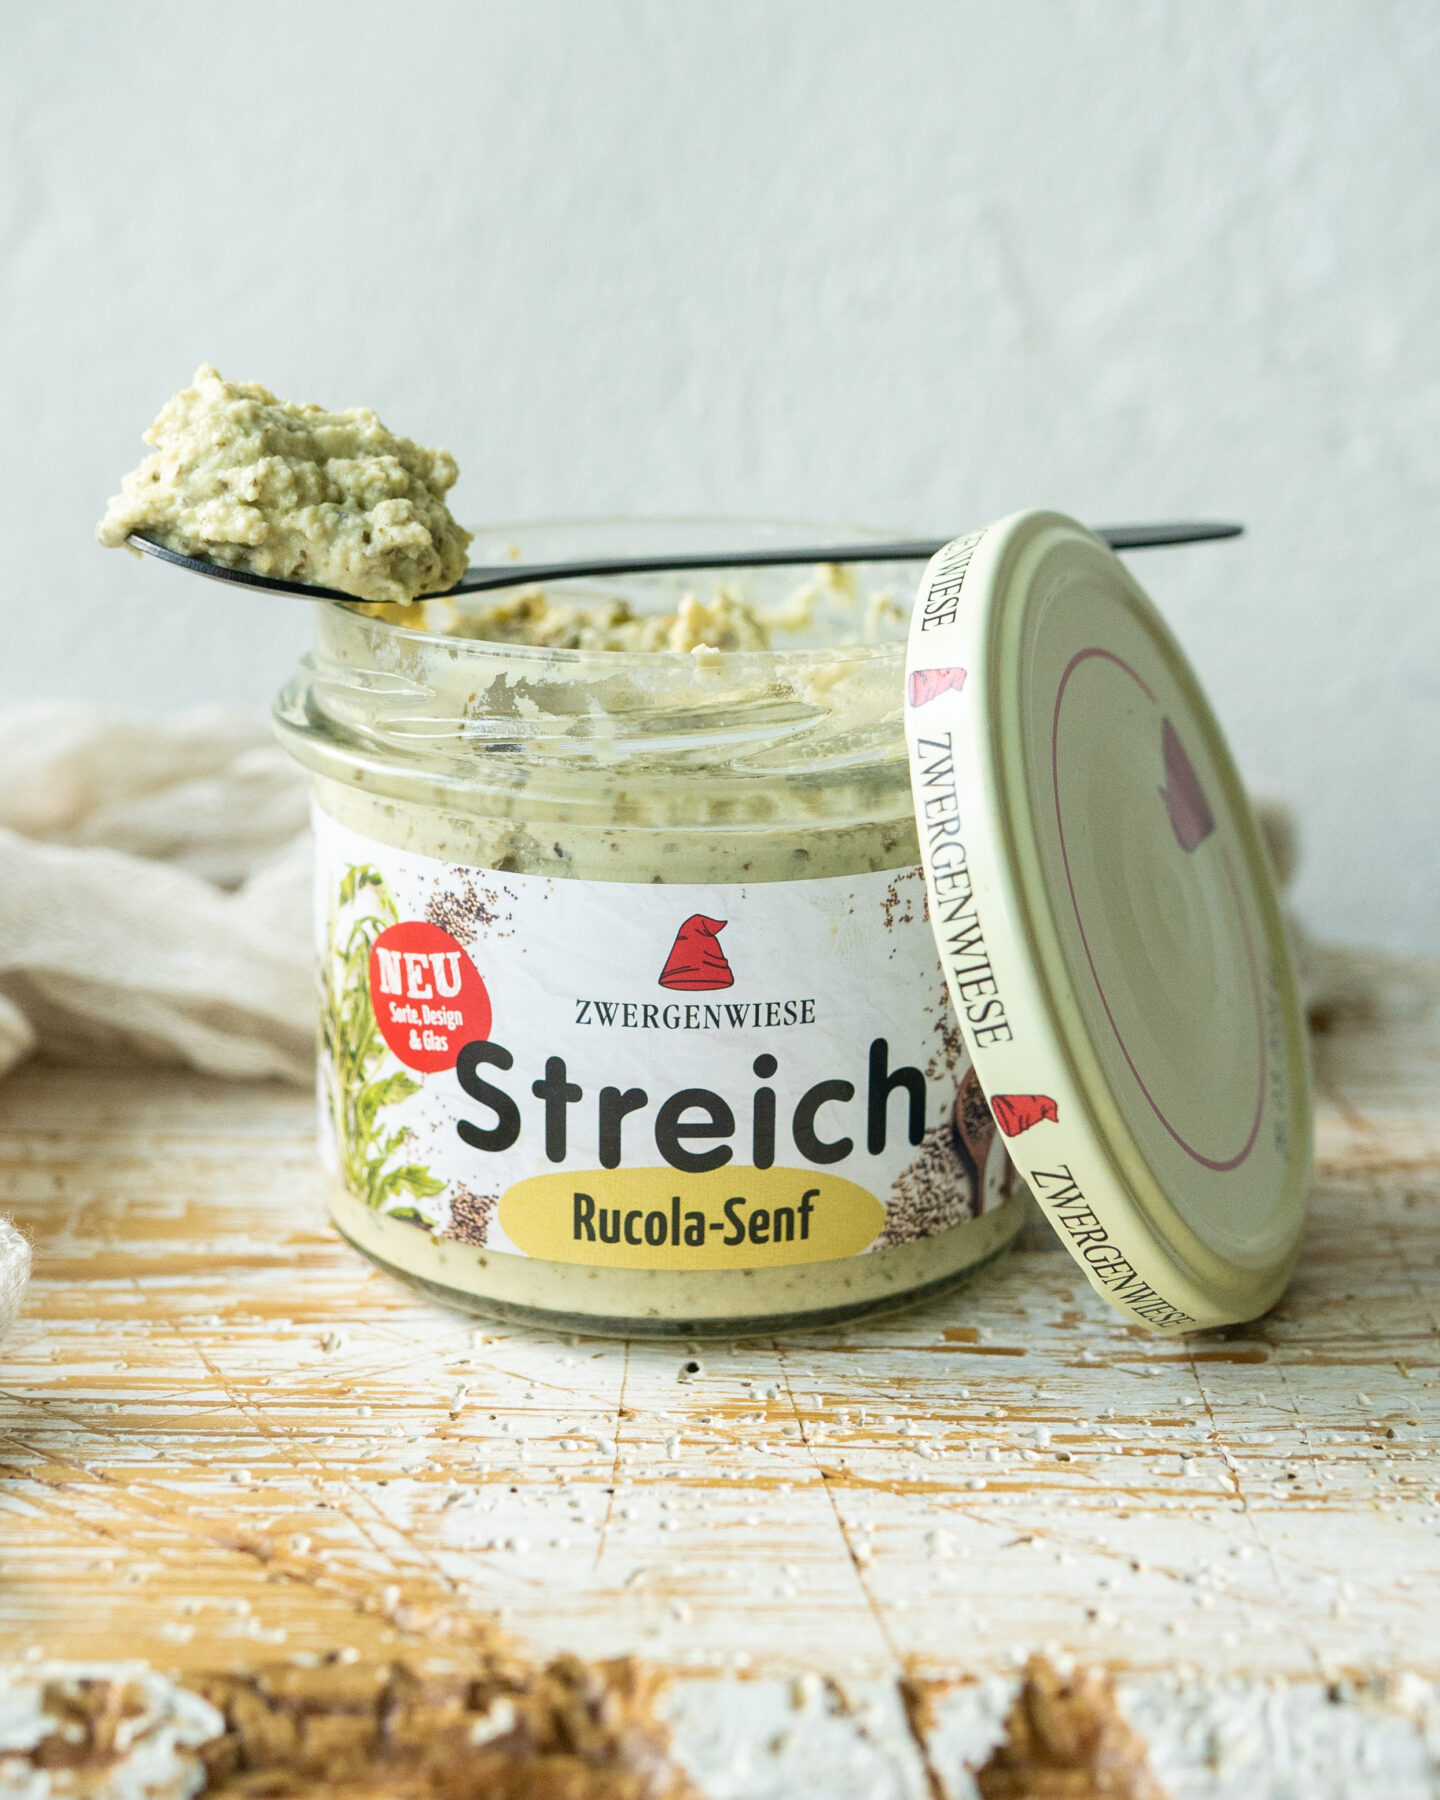 Zwergenwiese Streich Rucola-Senf